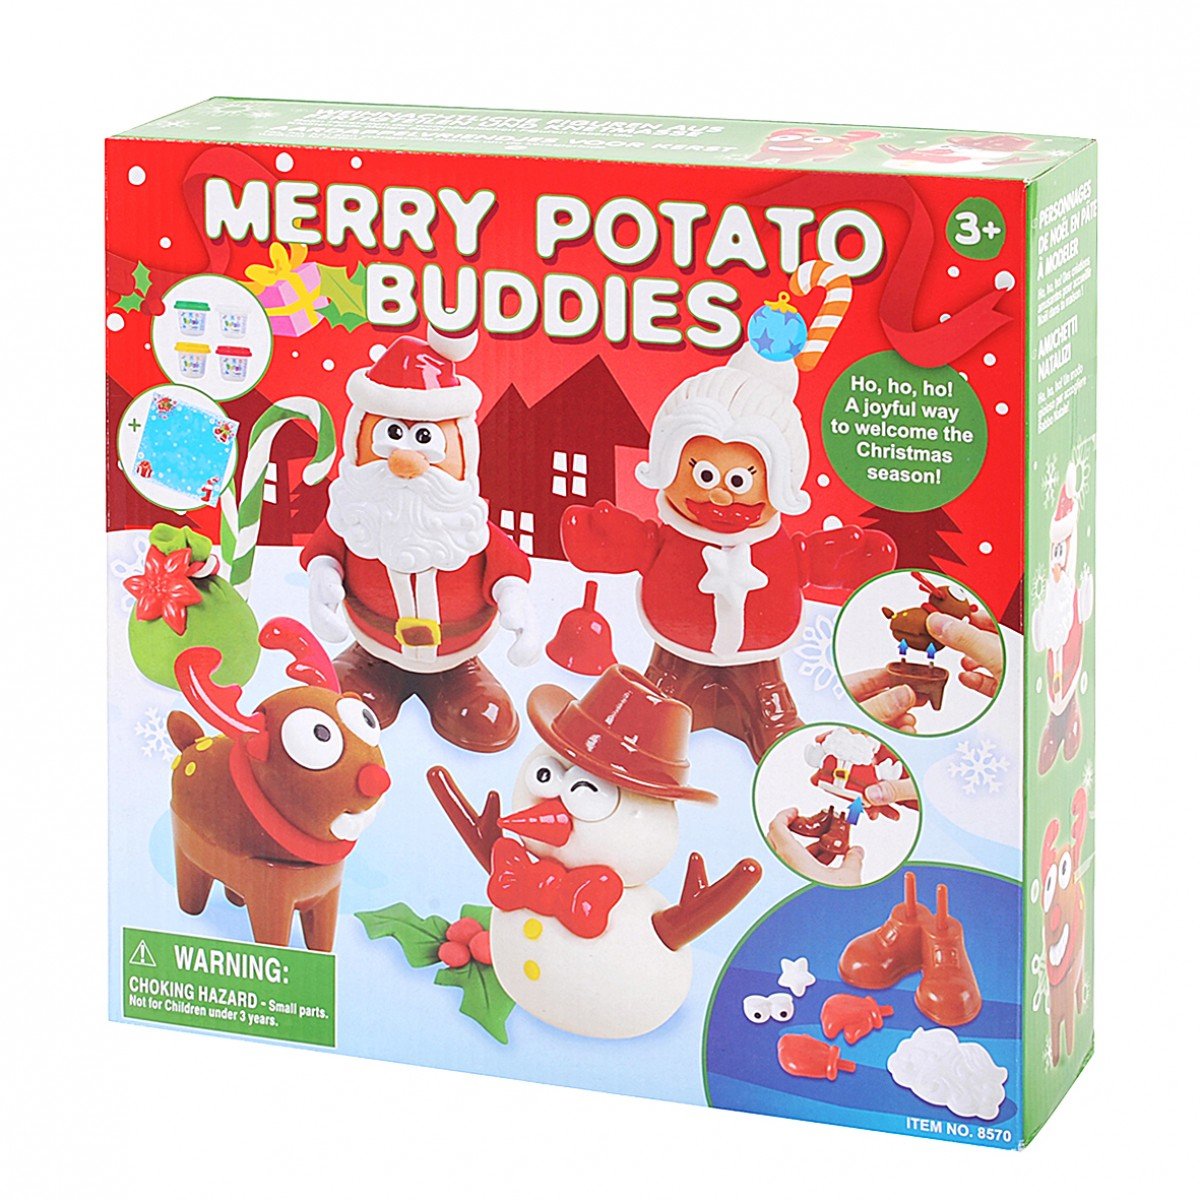 โดว์เซ็ต ลุงซานต้าและเพื่อน Merry Potato Buddies (รุ่น 8570) ยี่ห้อ PLAYGO